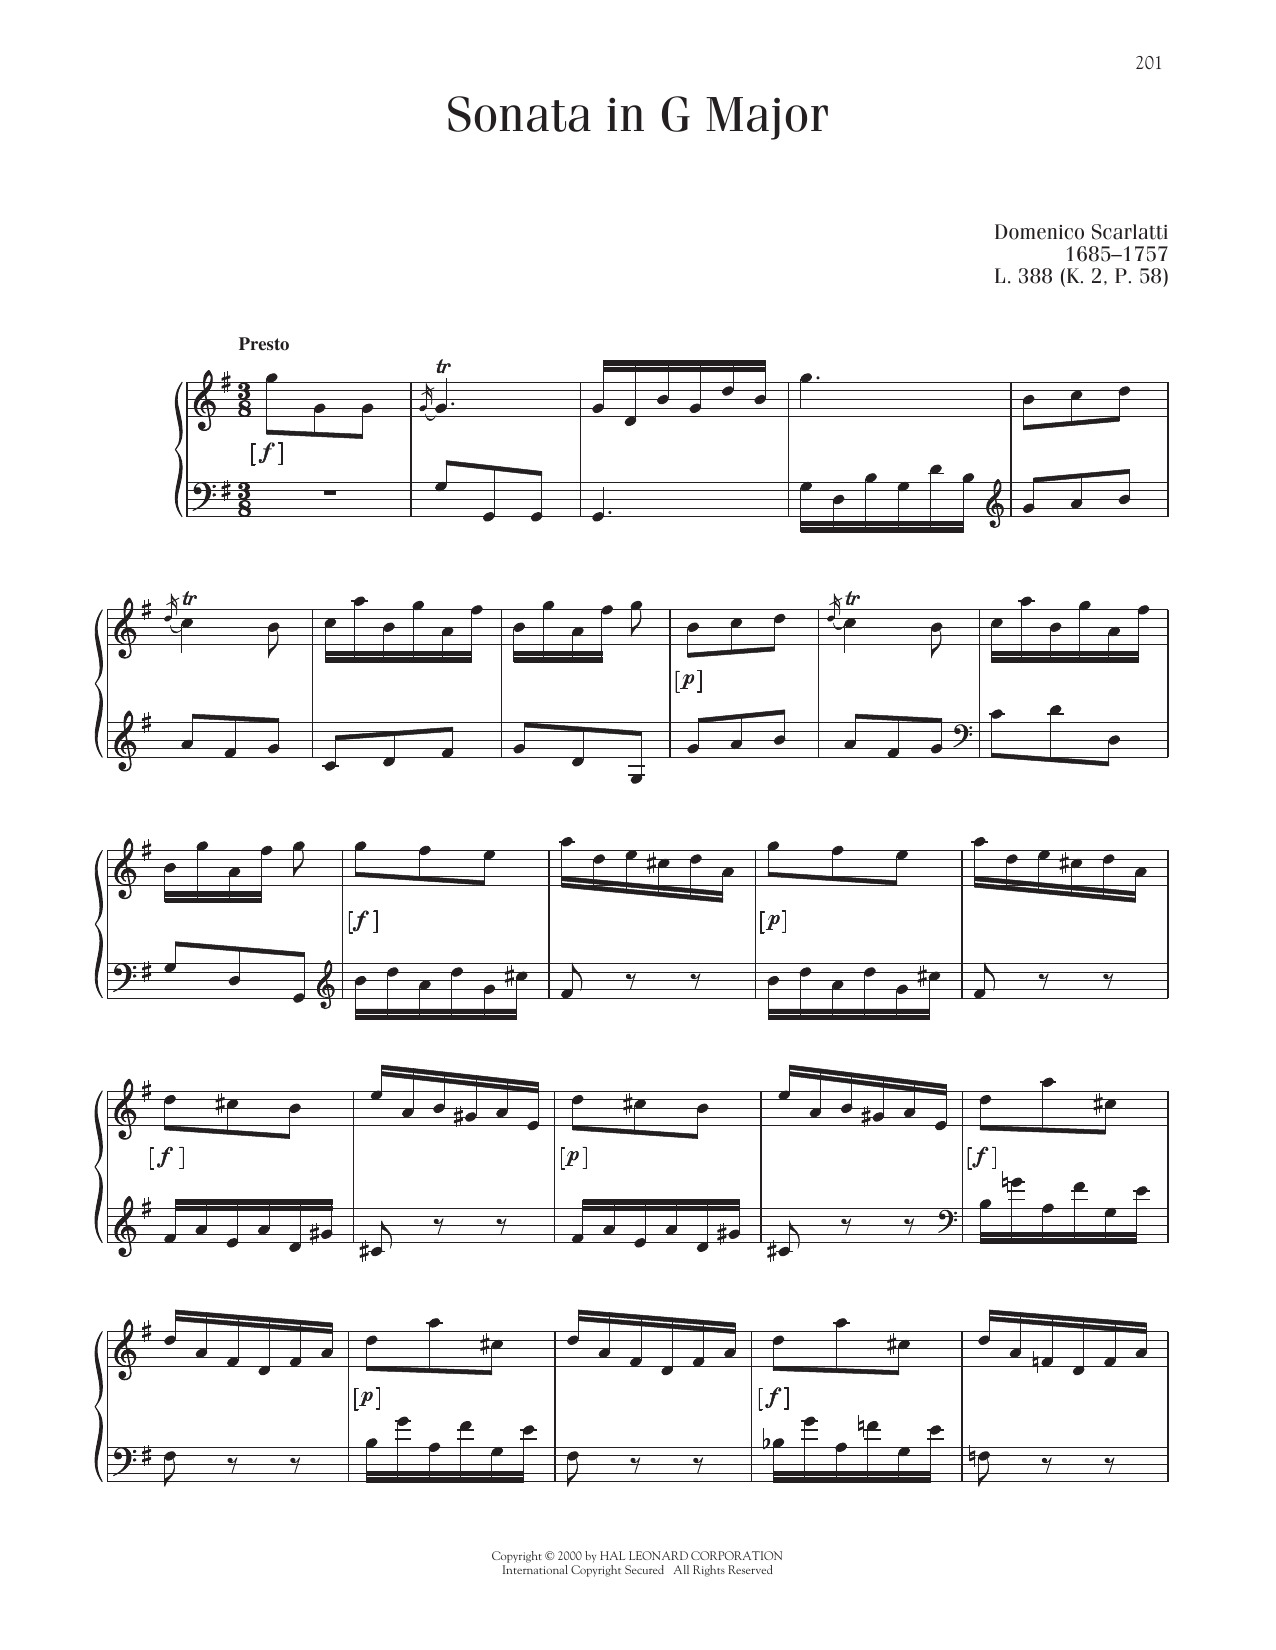 Domenico Scarlatti Sonata In G Major, K. 2 Sheet Music Notes & Chords for Piano Solo - Download or Print PDF